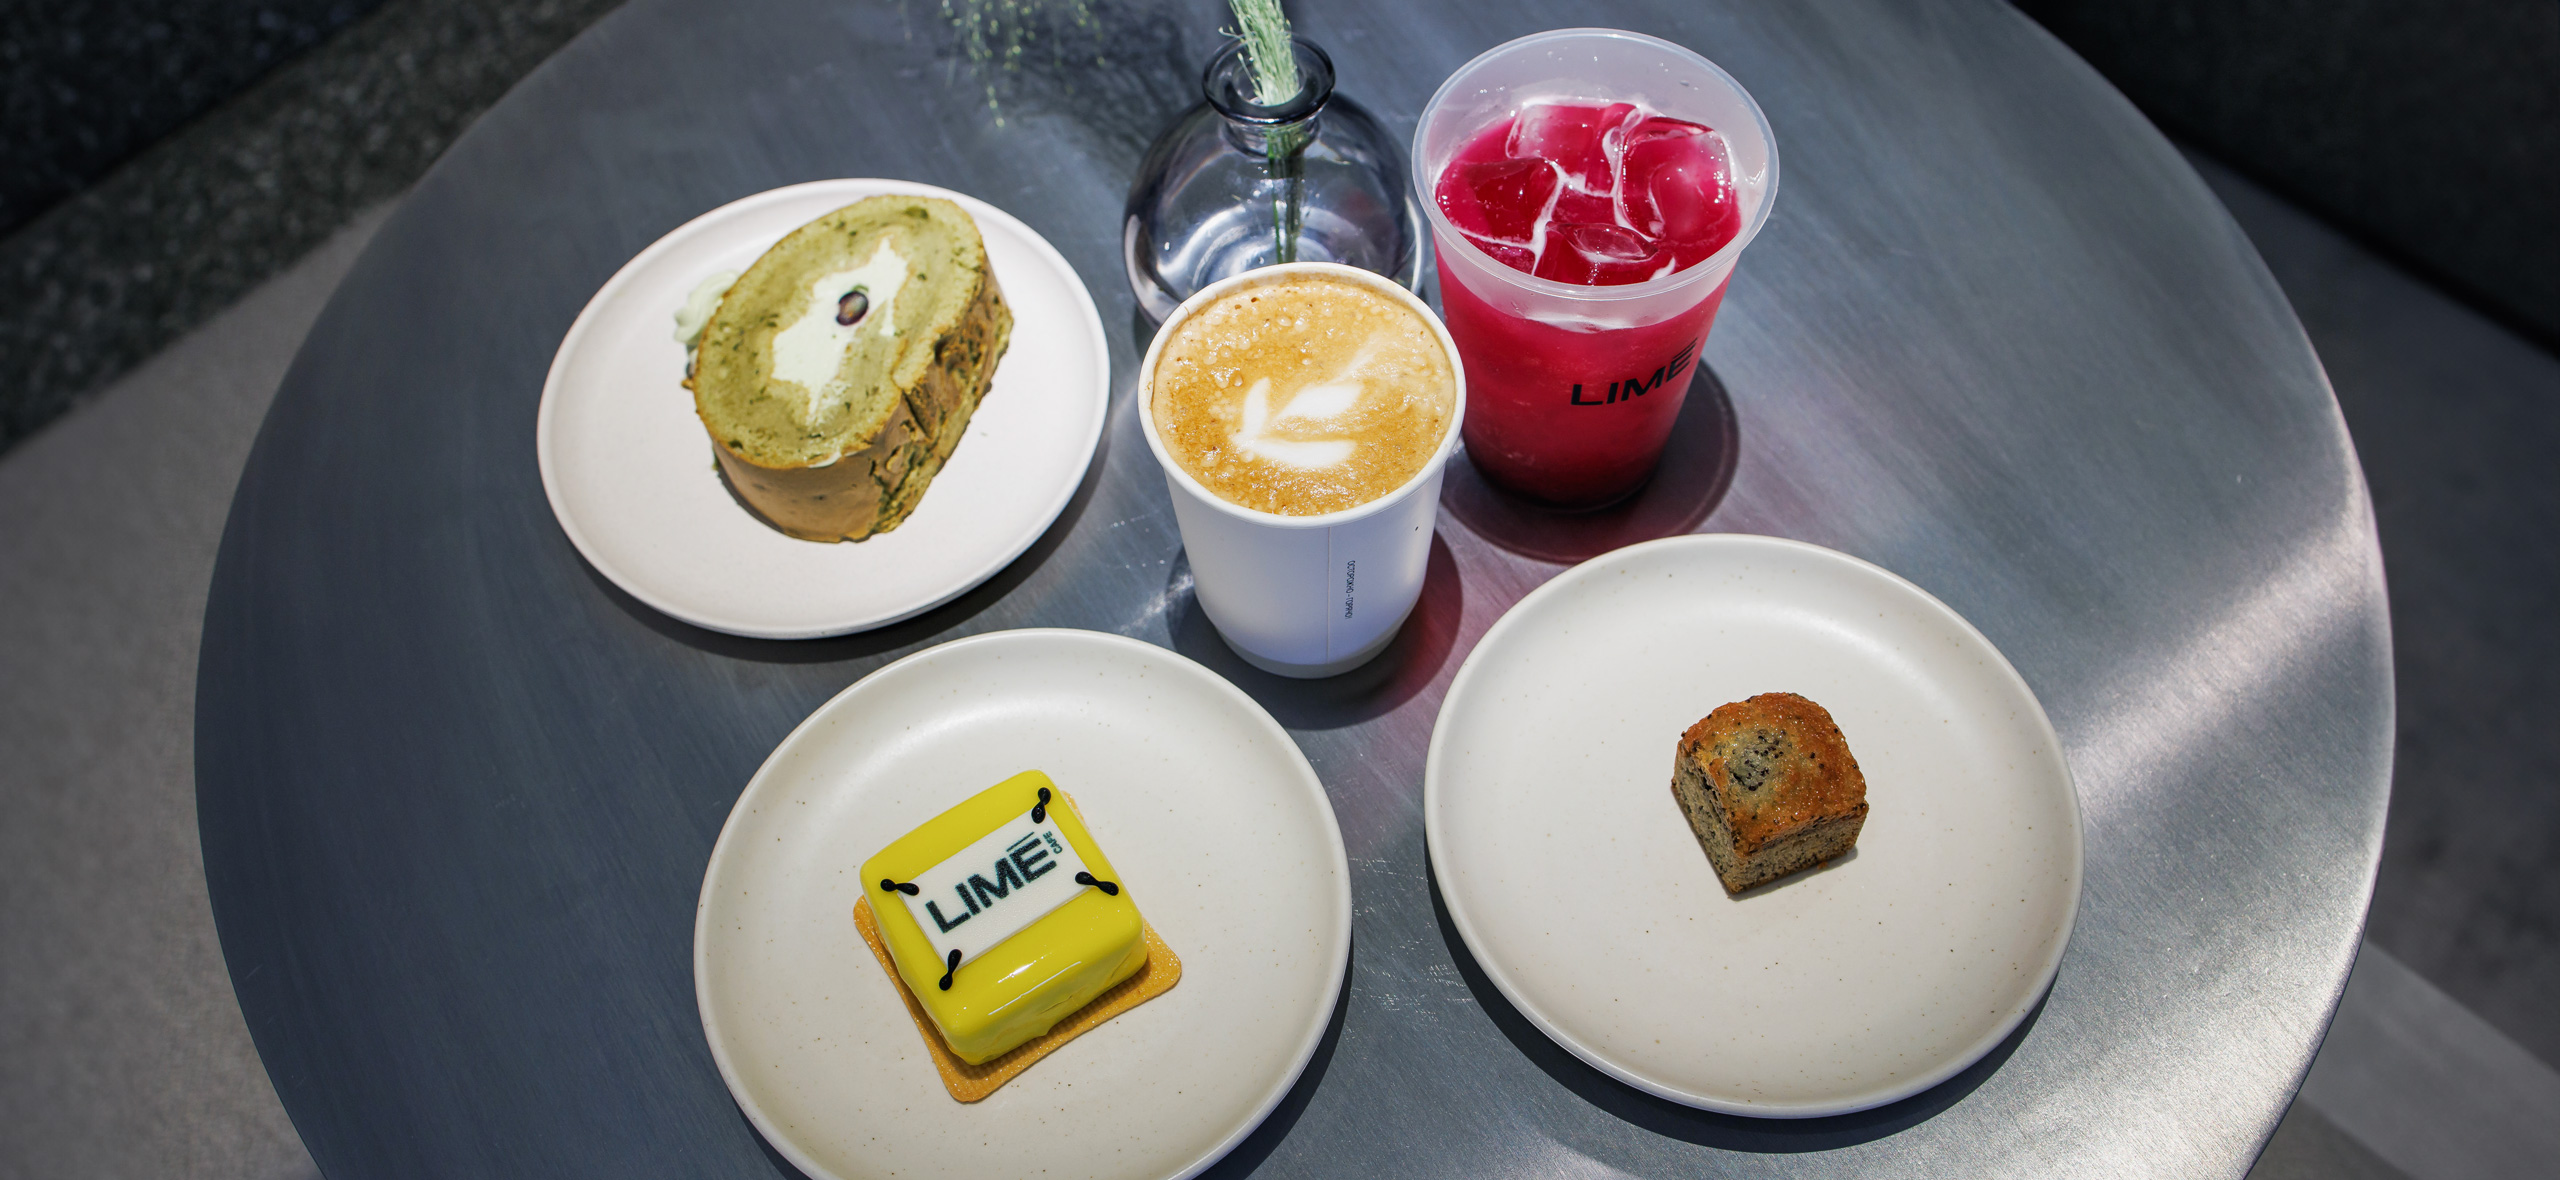 Бренд одежды Lime открыл кафе в Москве: чем кормят и стоит ли ​идти